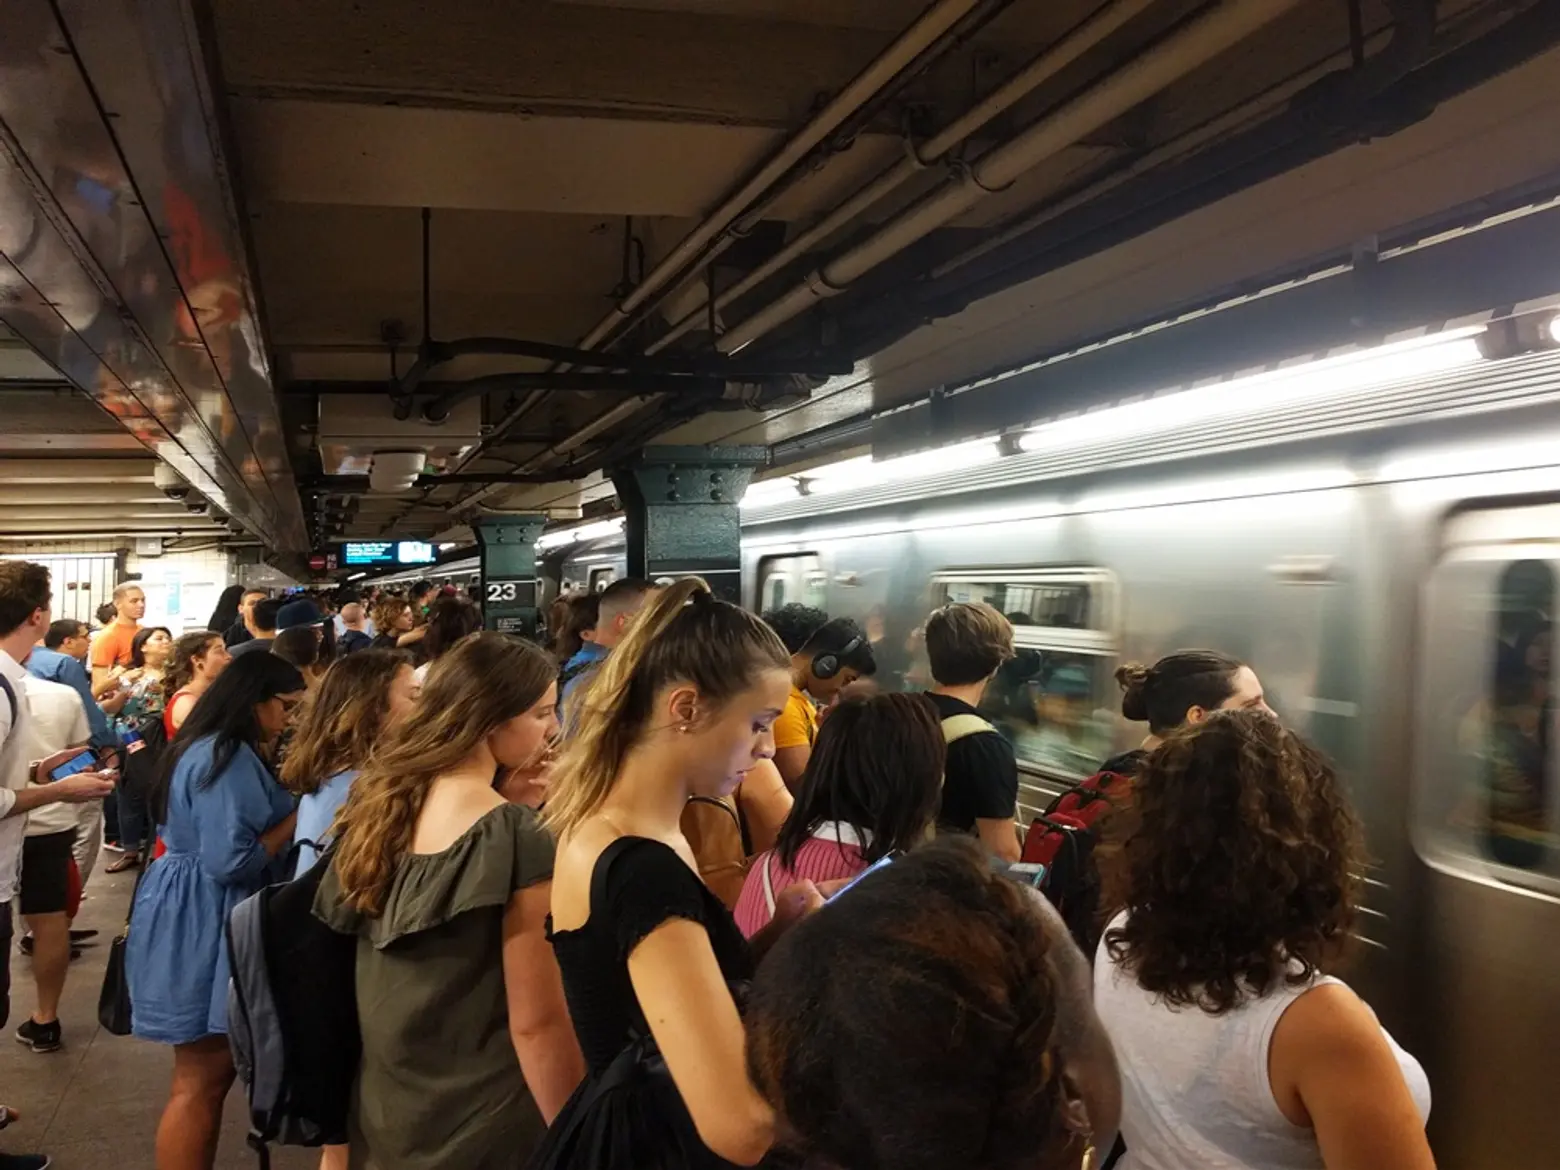 Recent breakdown spurs demand for better subway escape plans